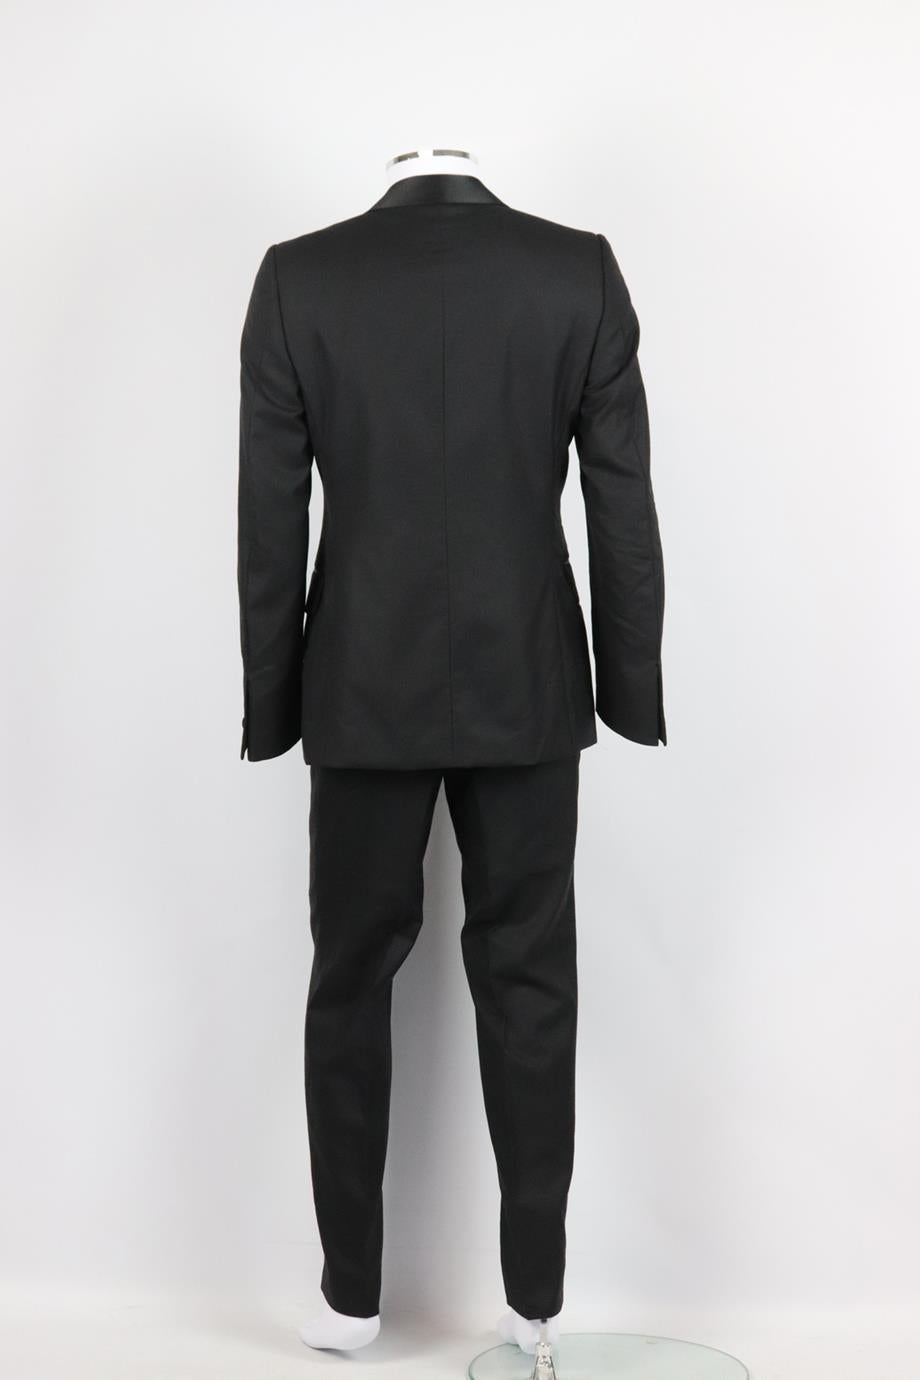 Yves Saint Laurent Men's Satin Trimmed Wool Two Piece Suit It 50 Uk/us Chest 40 1